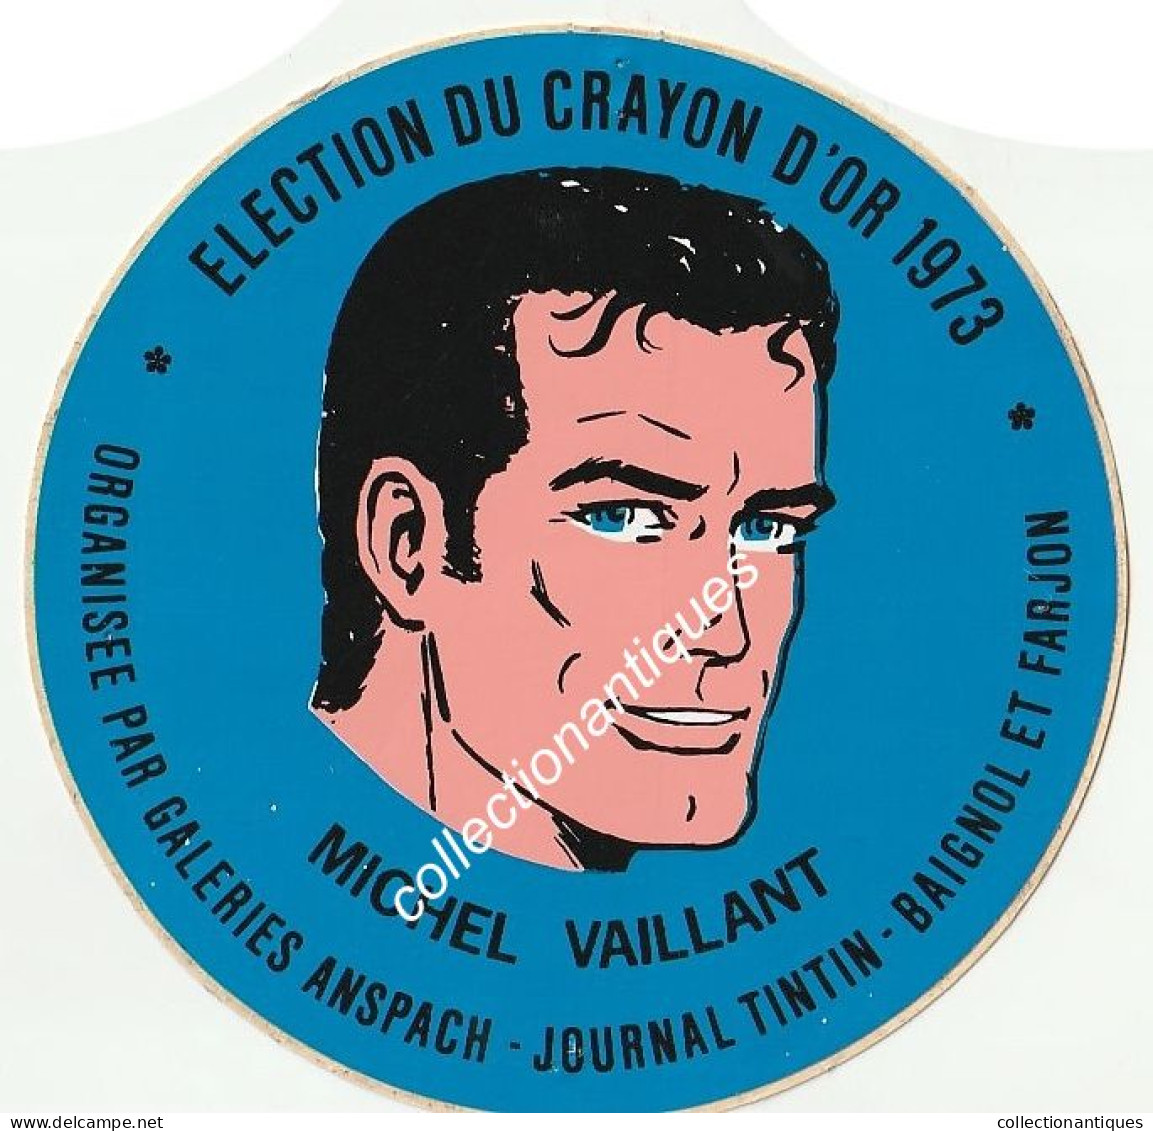 Michel Vaillant RARE Sticker Autocollant Election Du Crayon D'Or 1973 Galeries Anspach Journal Tintin Baignol Et Farjon - Zelfklevers